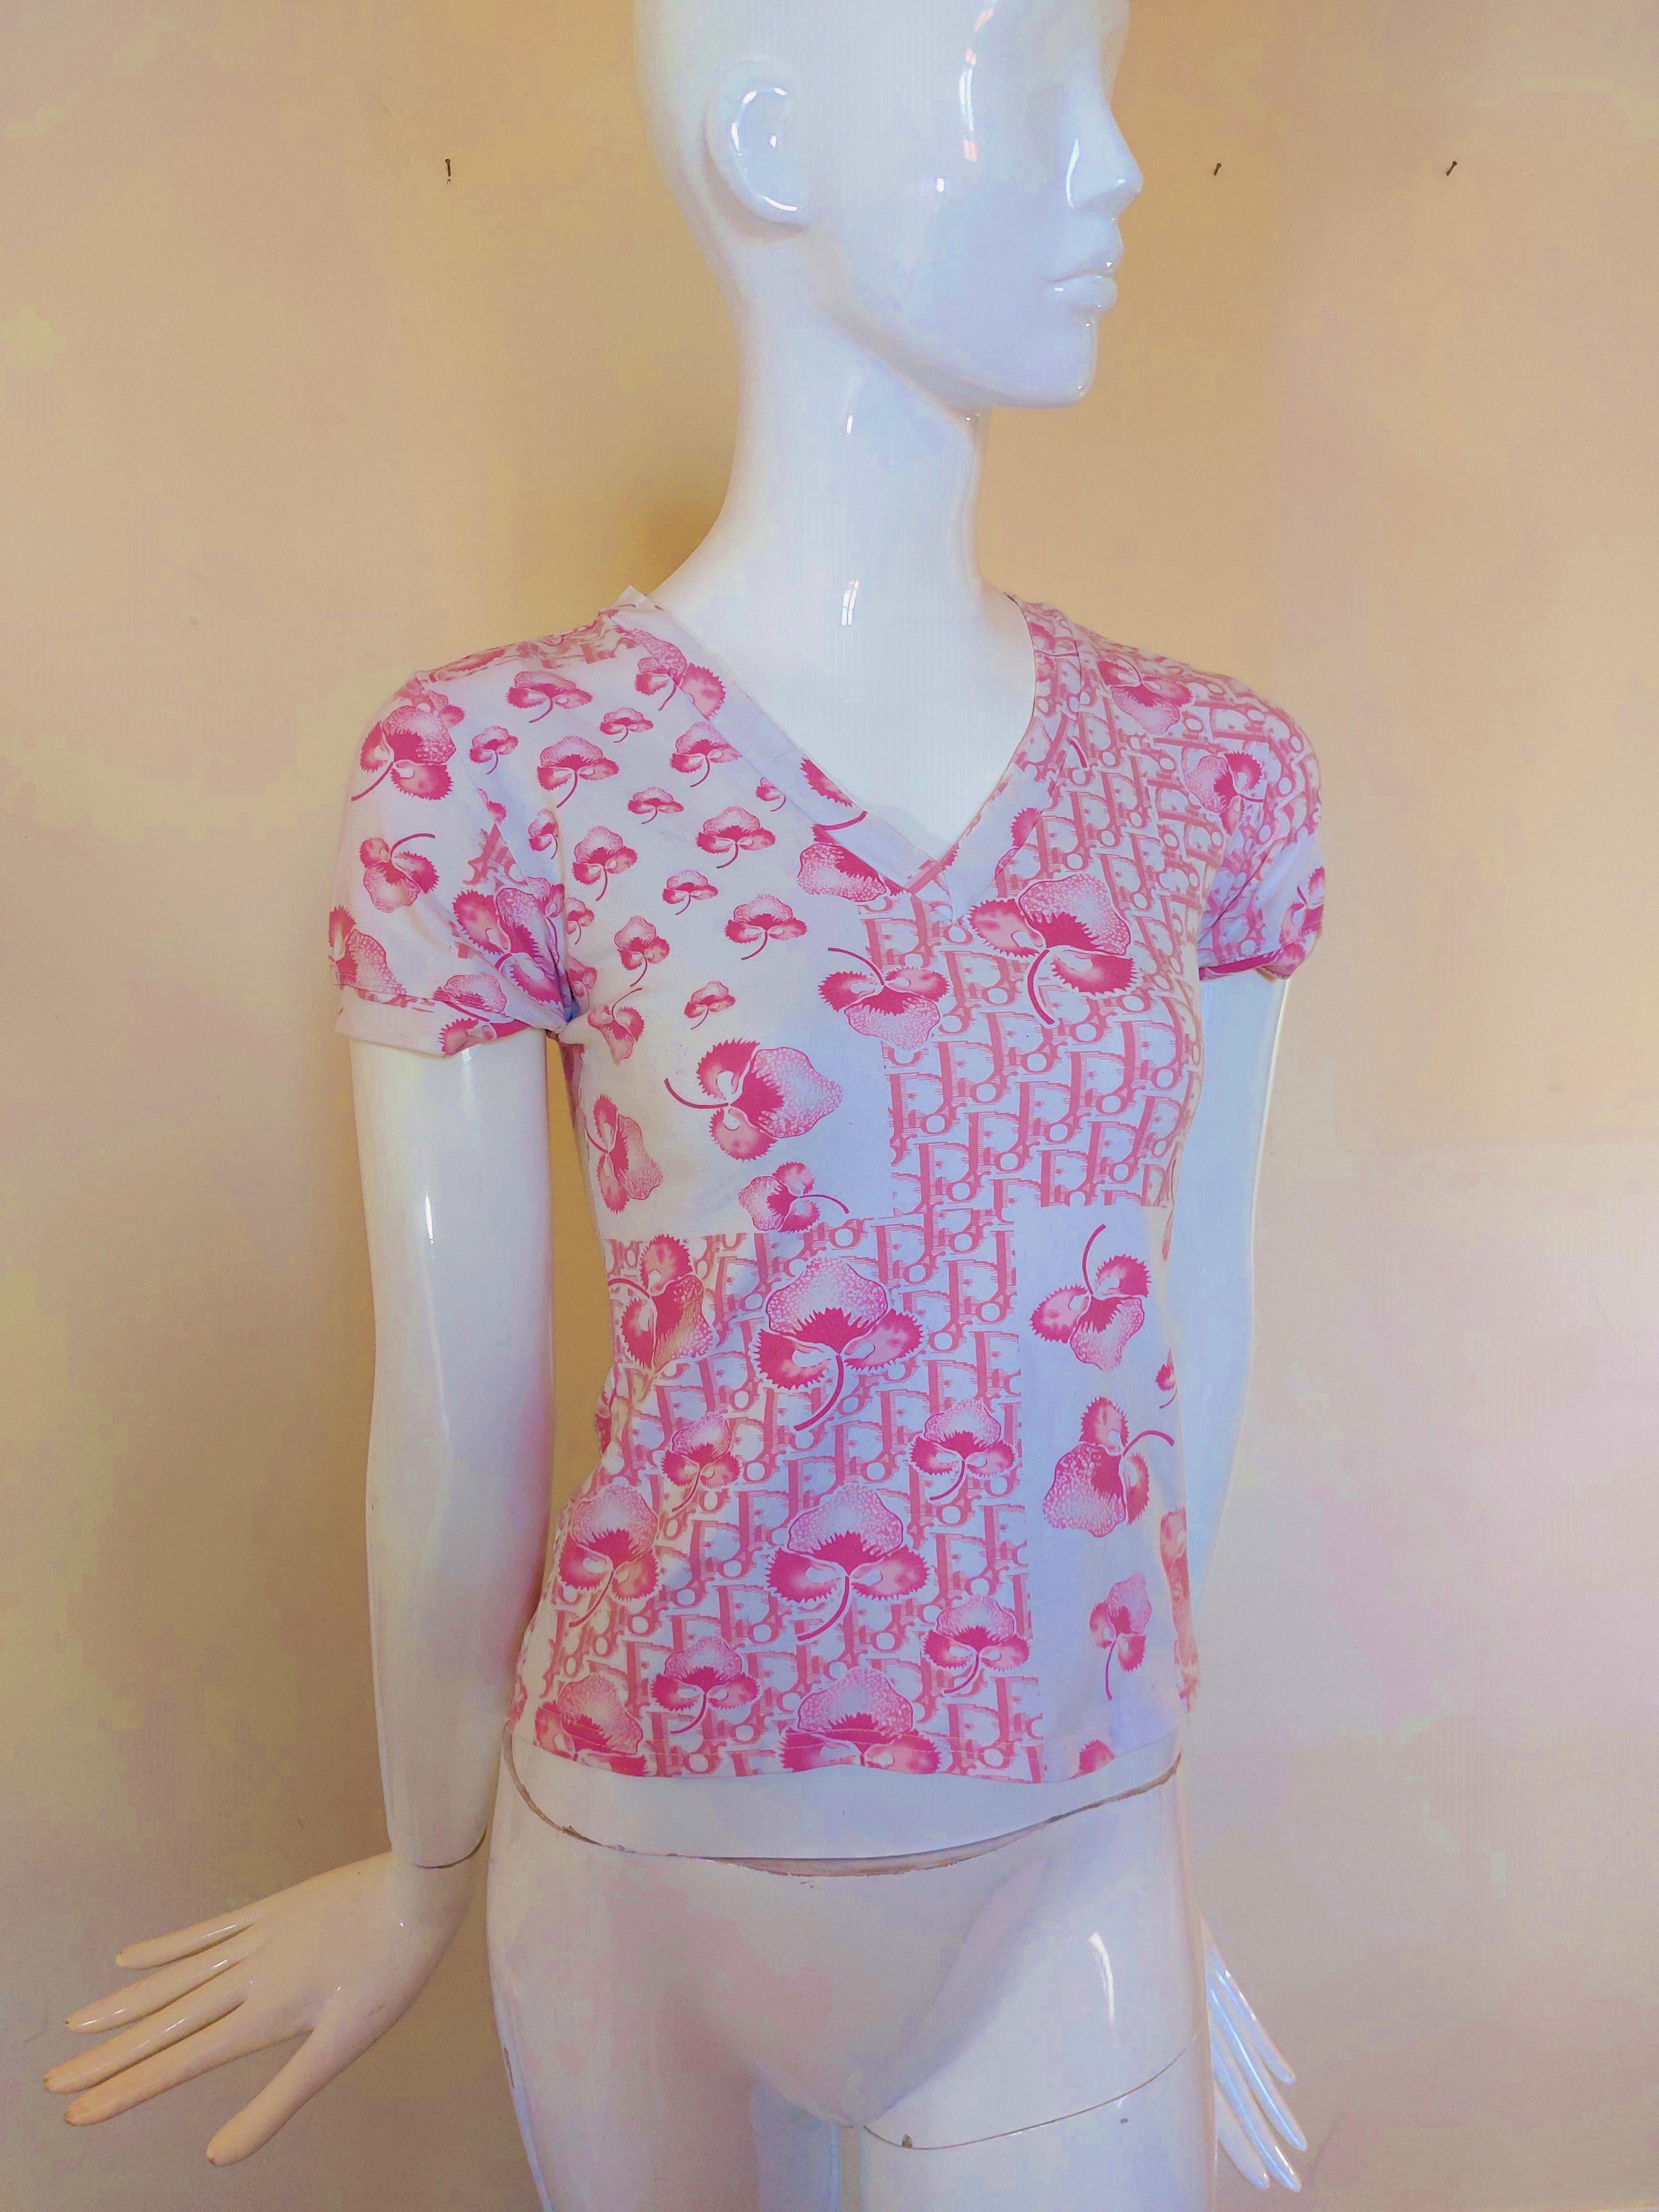 Christian Dior J’adore Cherry Blossom Monogram Floral Logo Pink Top Shirt 2